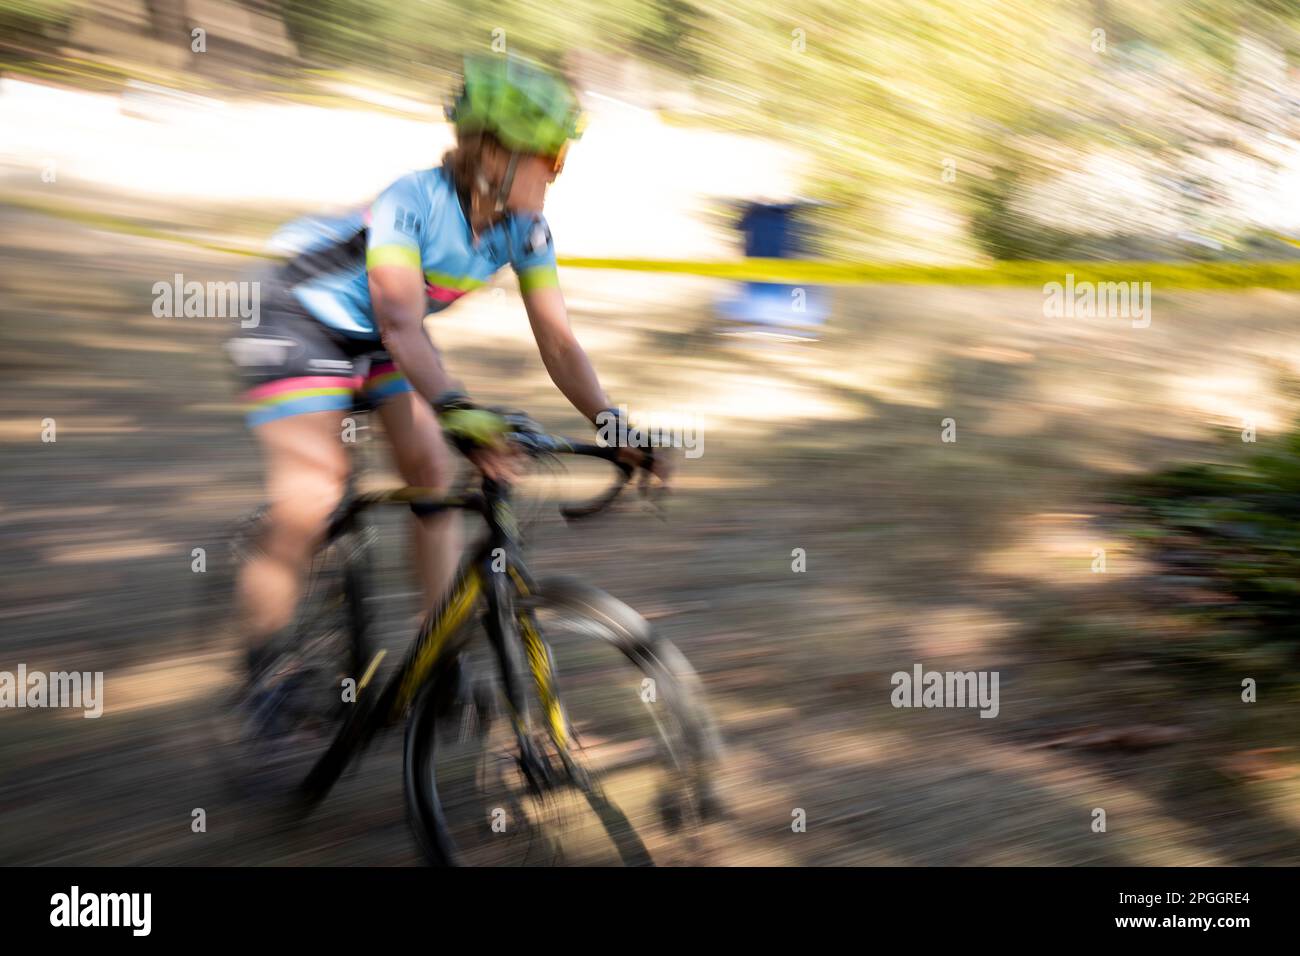 WA24041-00... Washington - Frau, die an einem Cyclocross-Rennen in West-Washington teilnimmt. Stockfoto